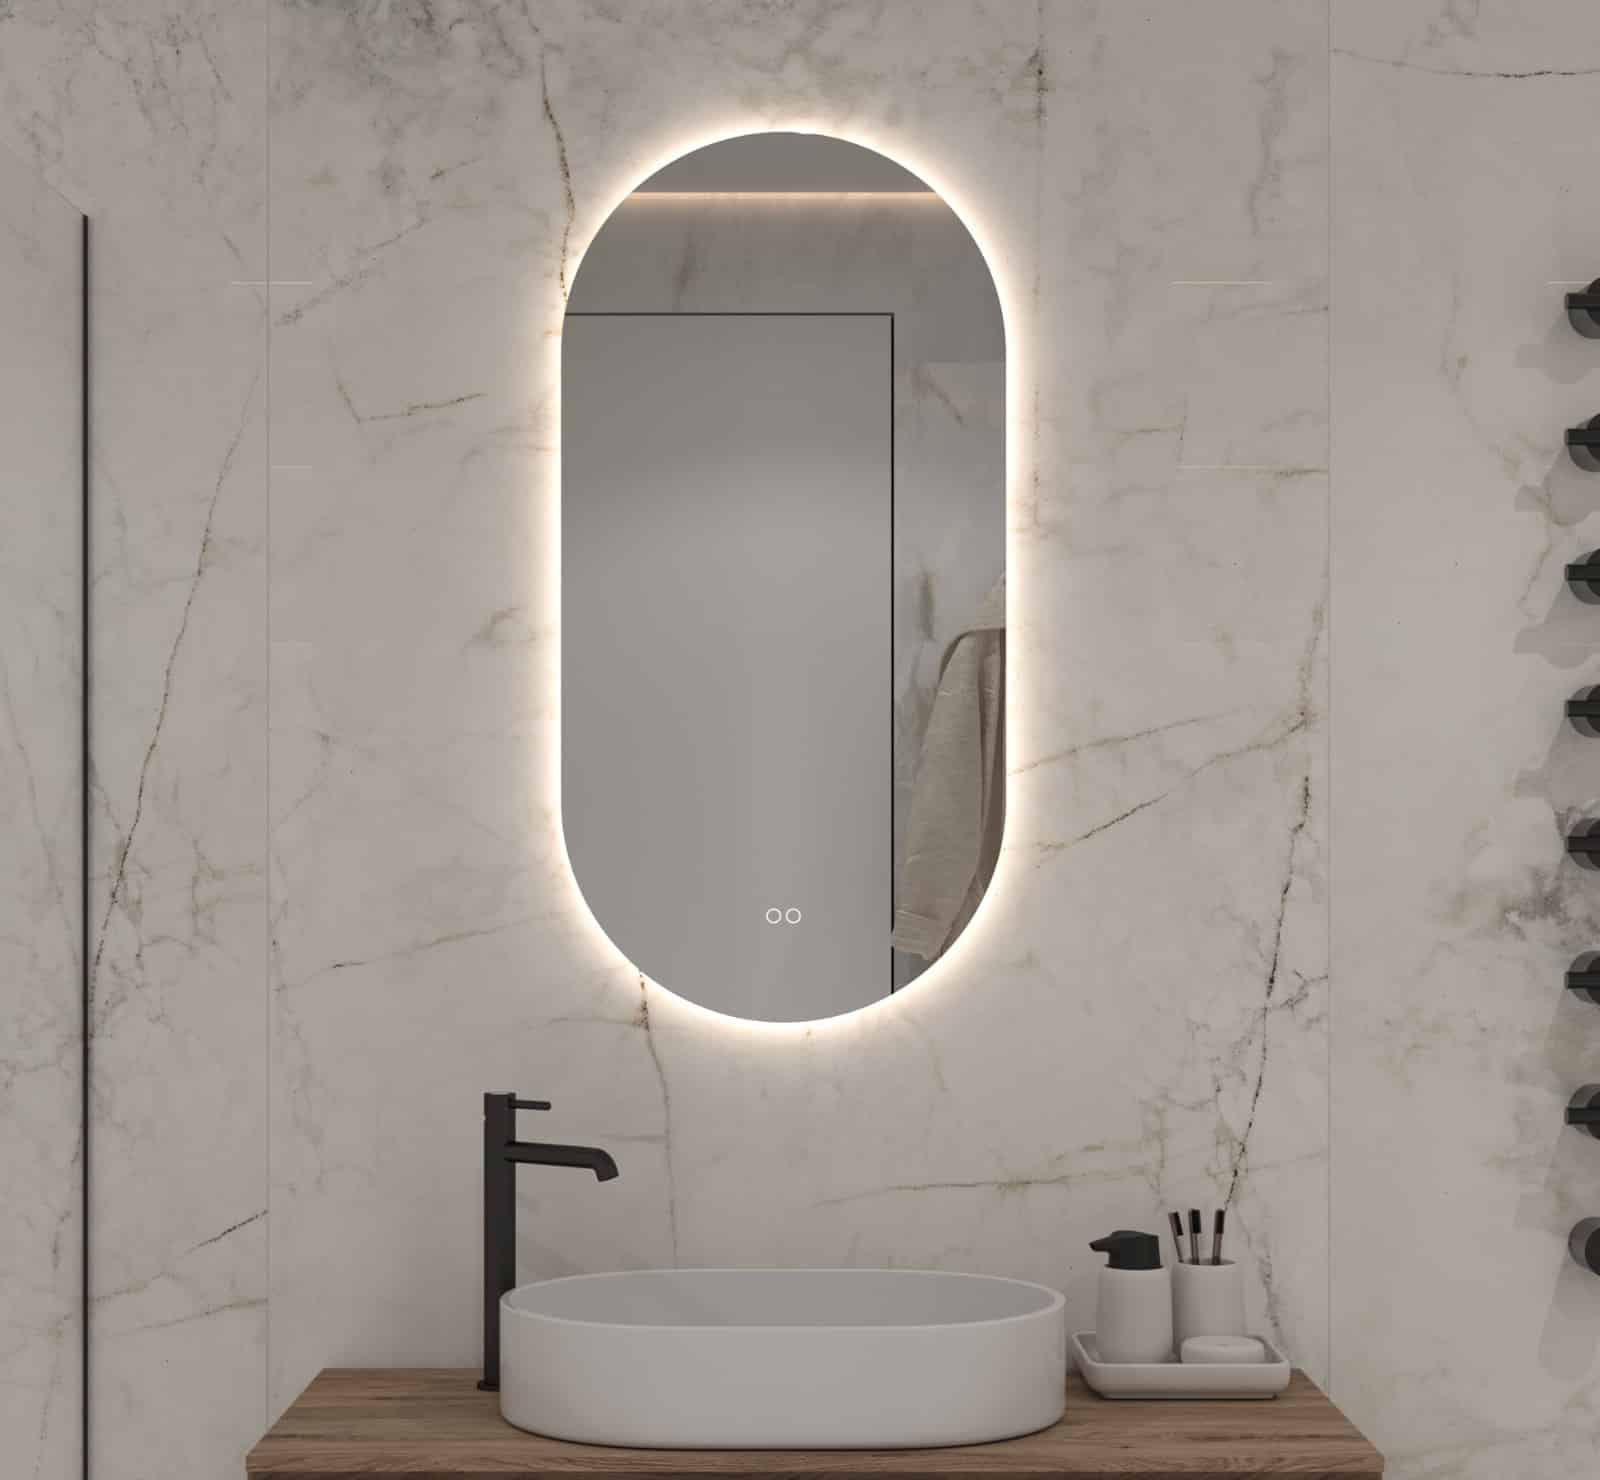 Ovale design badkamer spiegel met ingebouwde verlichting, spiegelverwarming en dubbele touch schakelaar met dimfunctie en instelbare lichtkleur